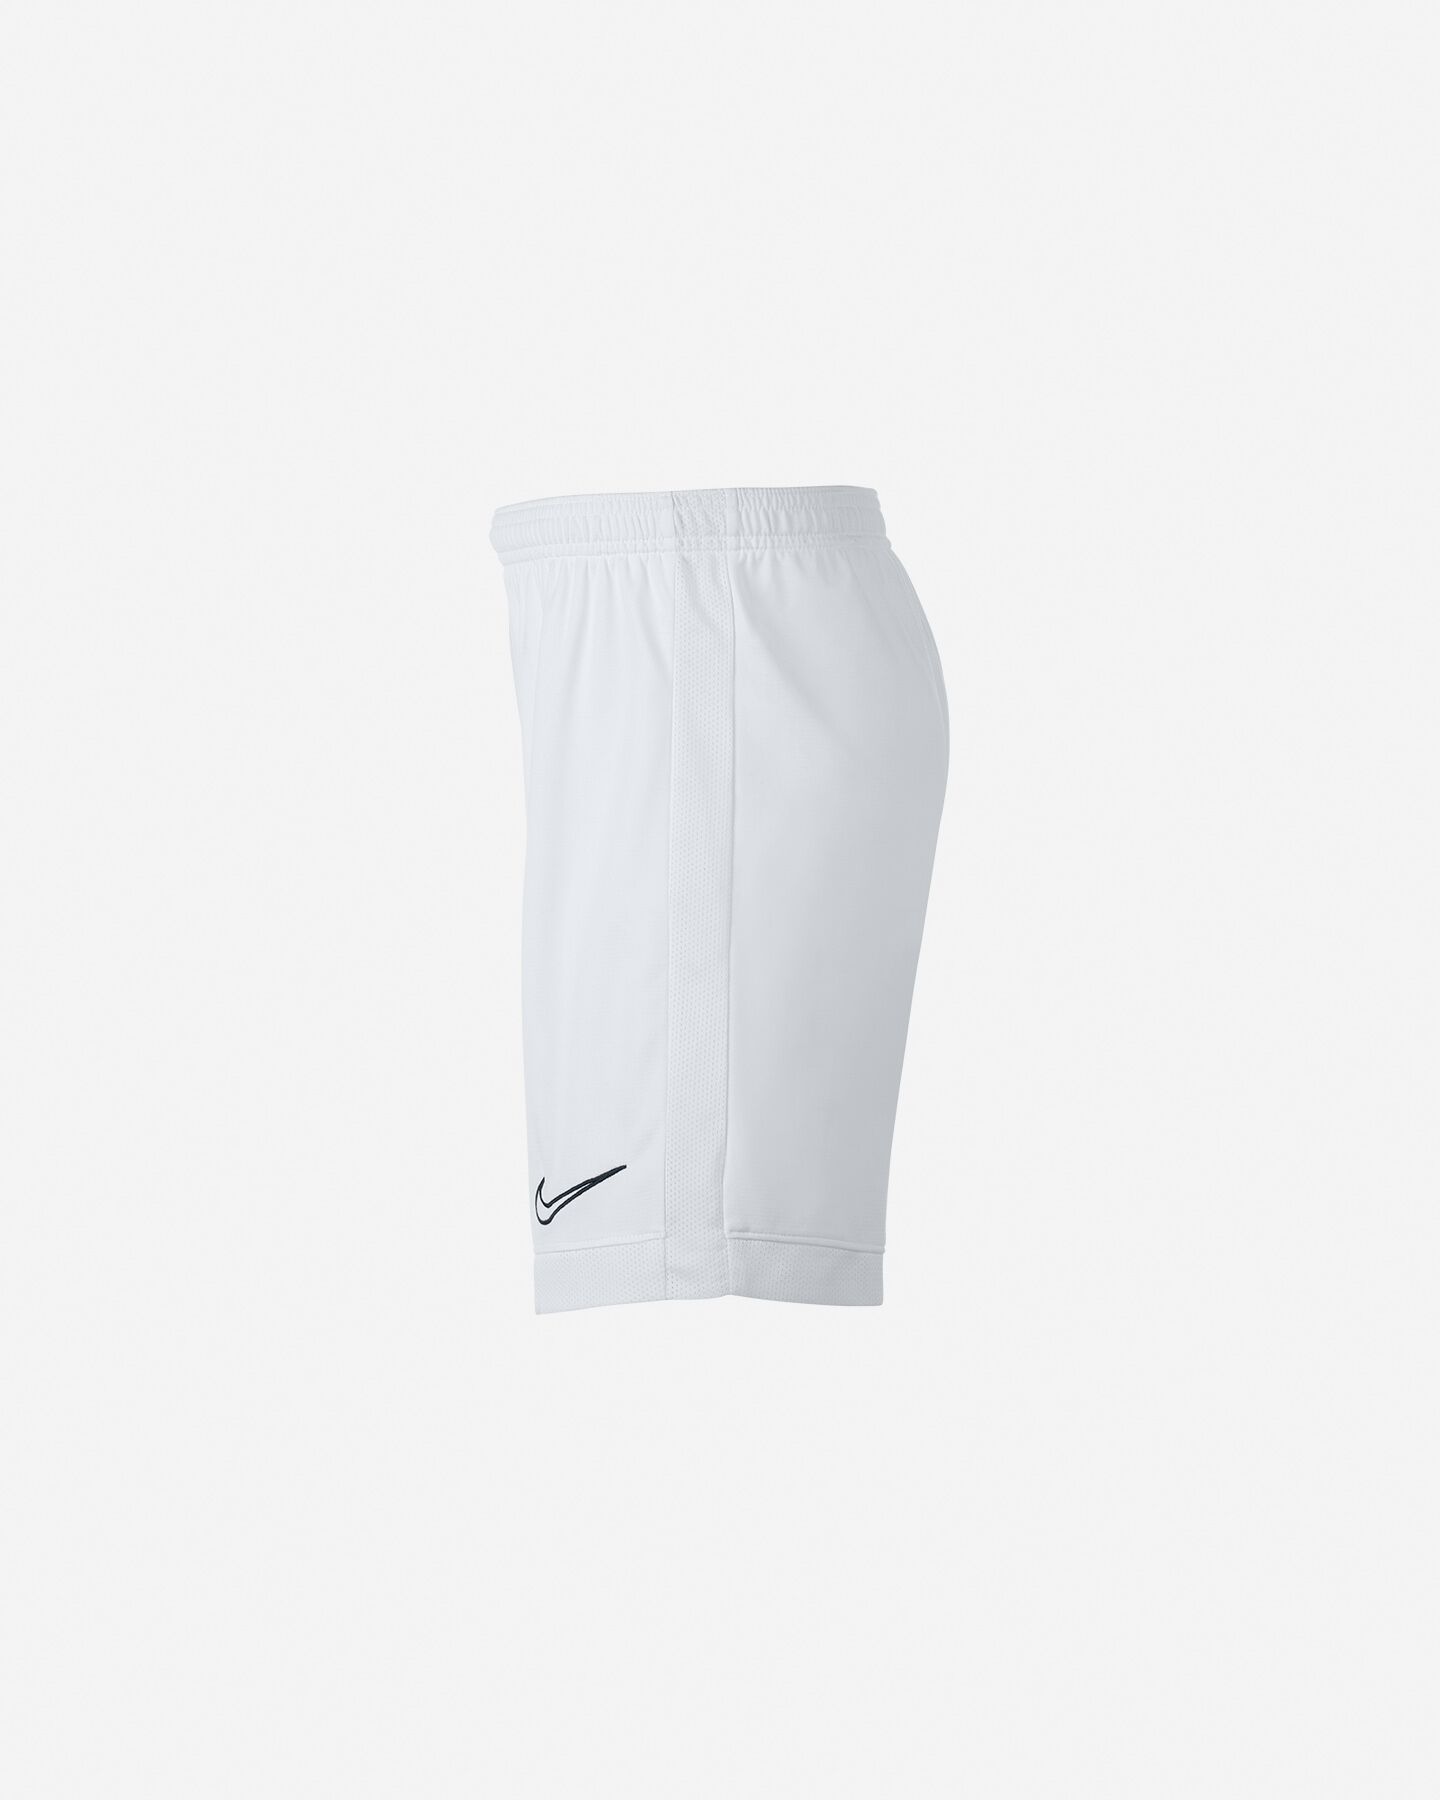  Pantaloncini calcio NIKE DRI-FIT ACADEMY JR S4063931|101|S scatto 1